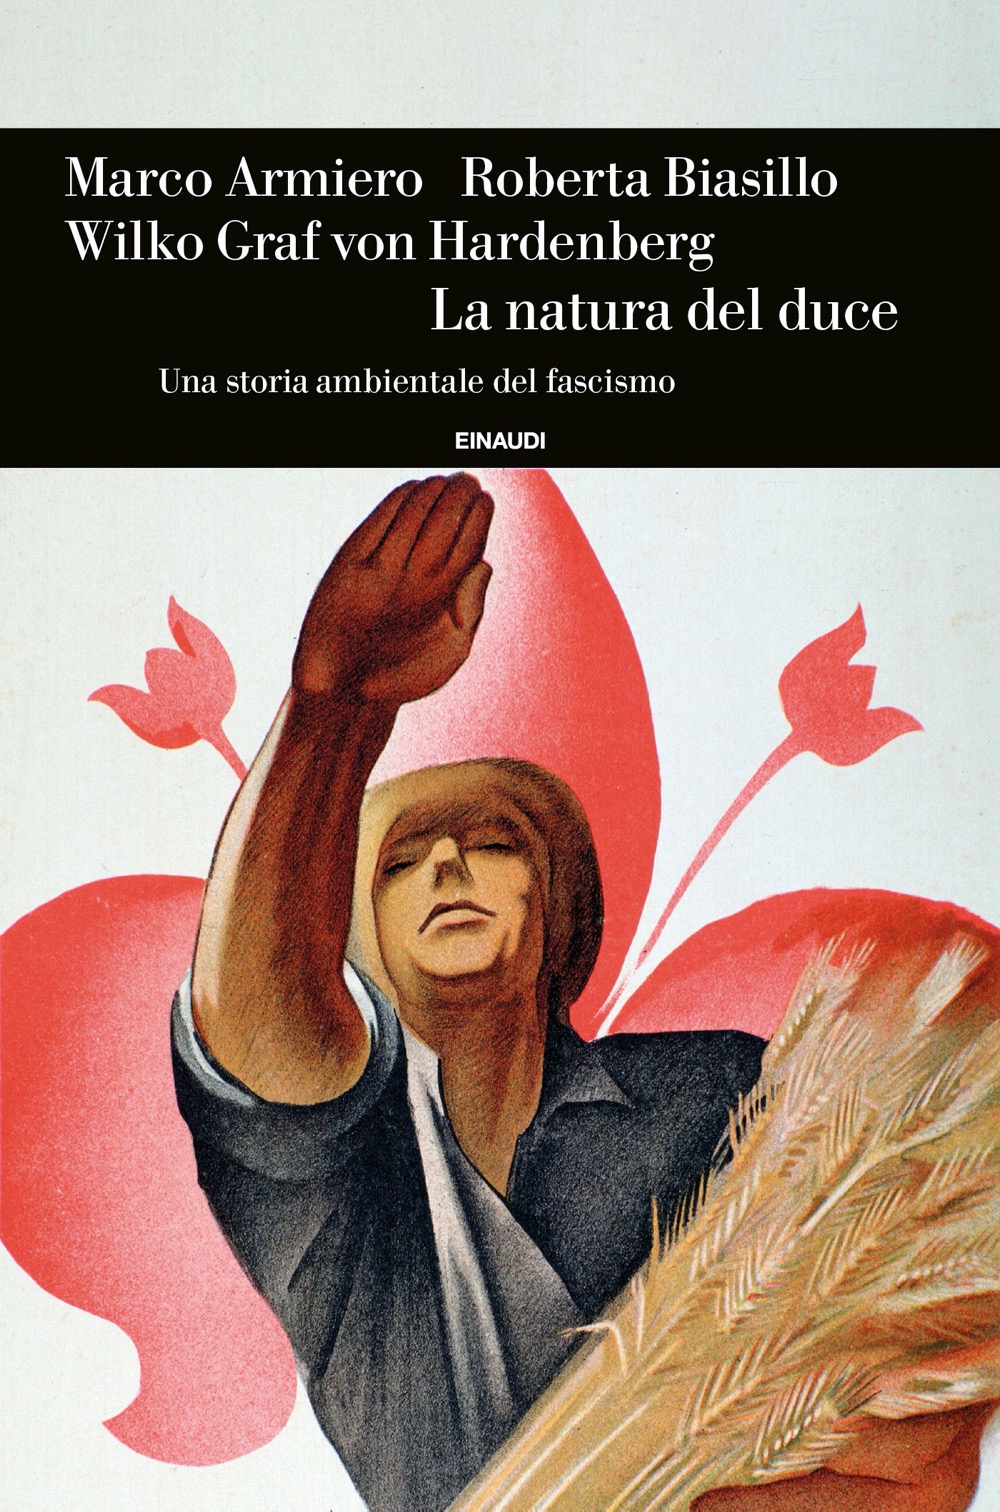 La natura del duce, Marco Armiero, Roberta Biasillo, Wilko Graf von  Hardenberg. Giulio Einaudi editore - Einaudi Storia